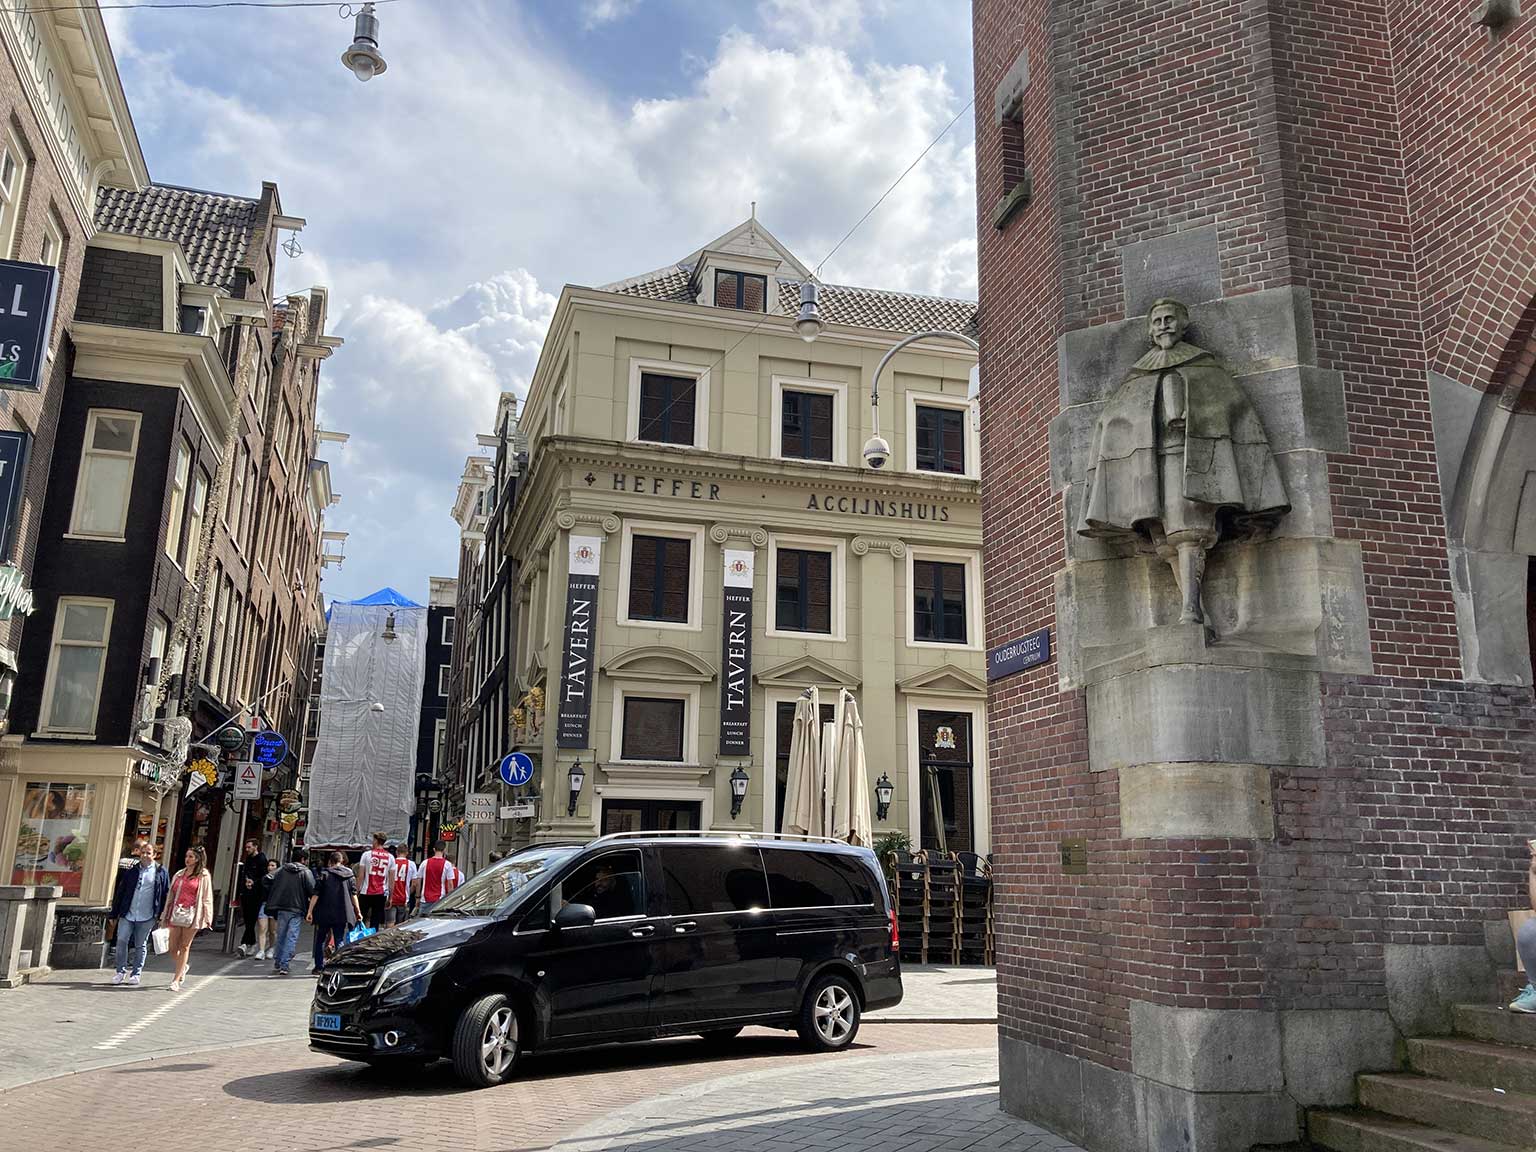 Accijnshuis, now Café Heffer, at Oudebrugsteeg corner Beursstraat, Amsterdam